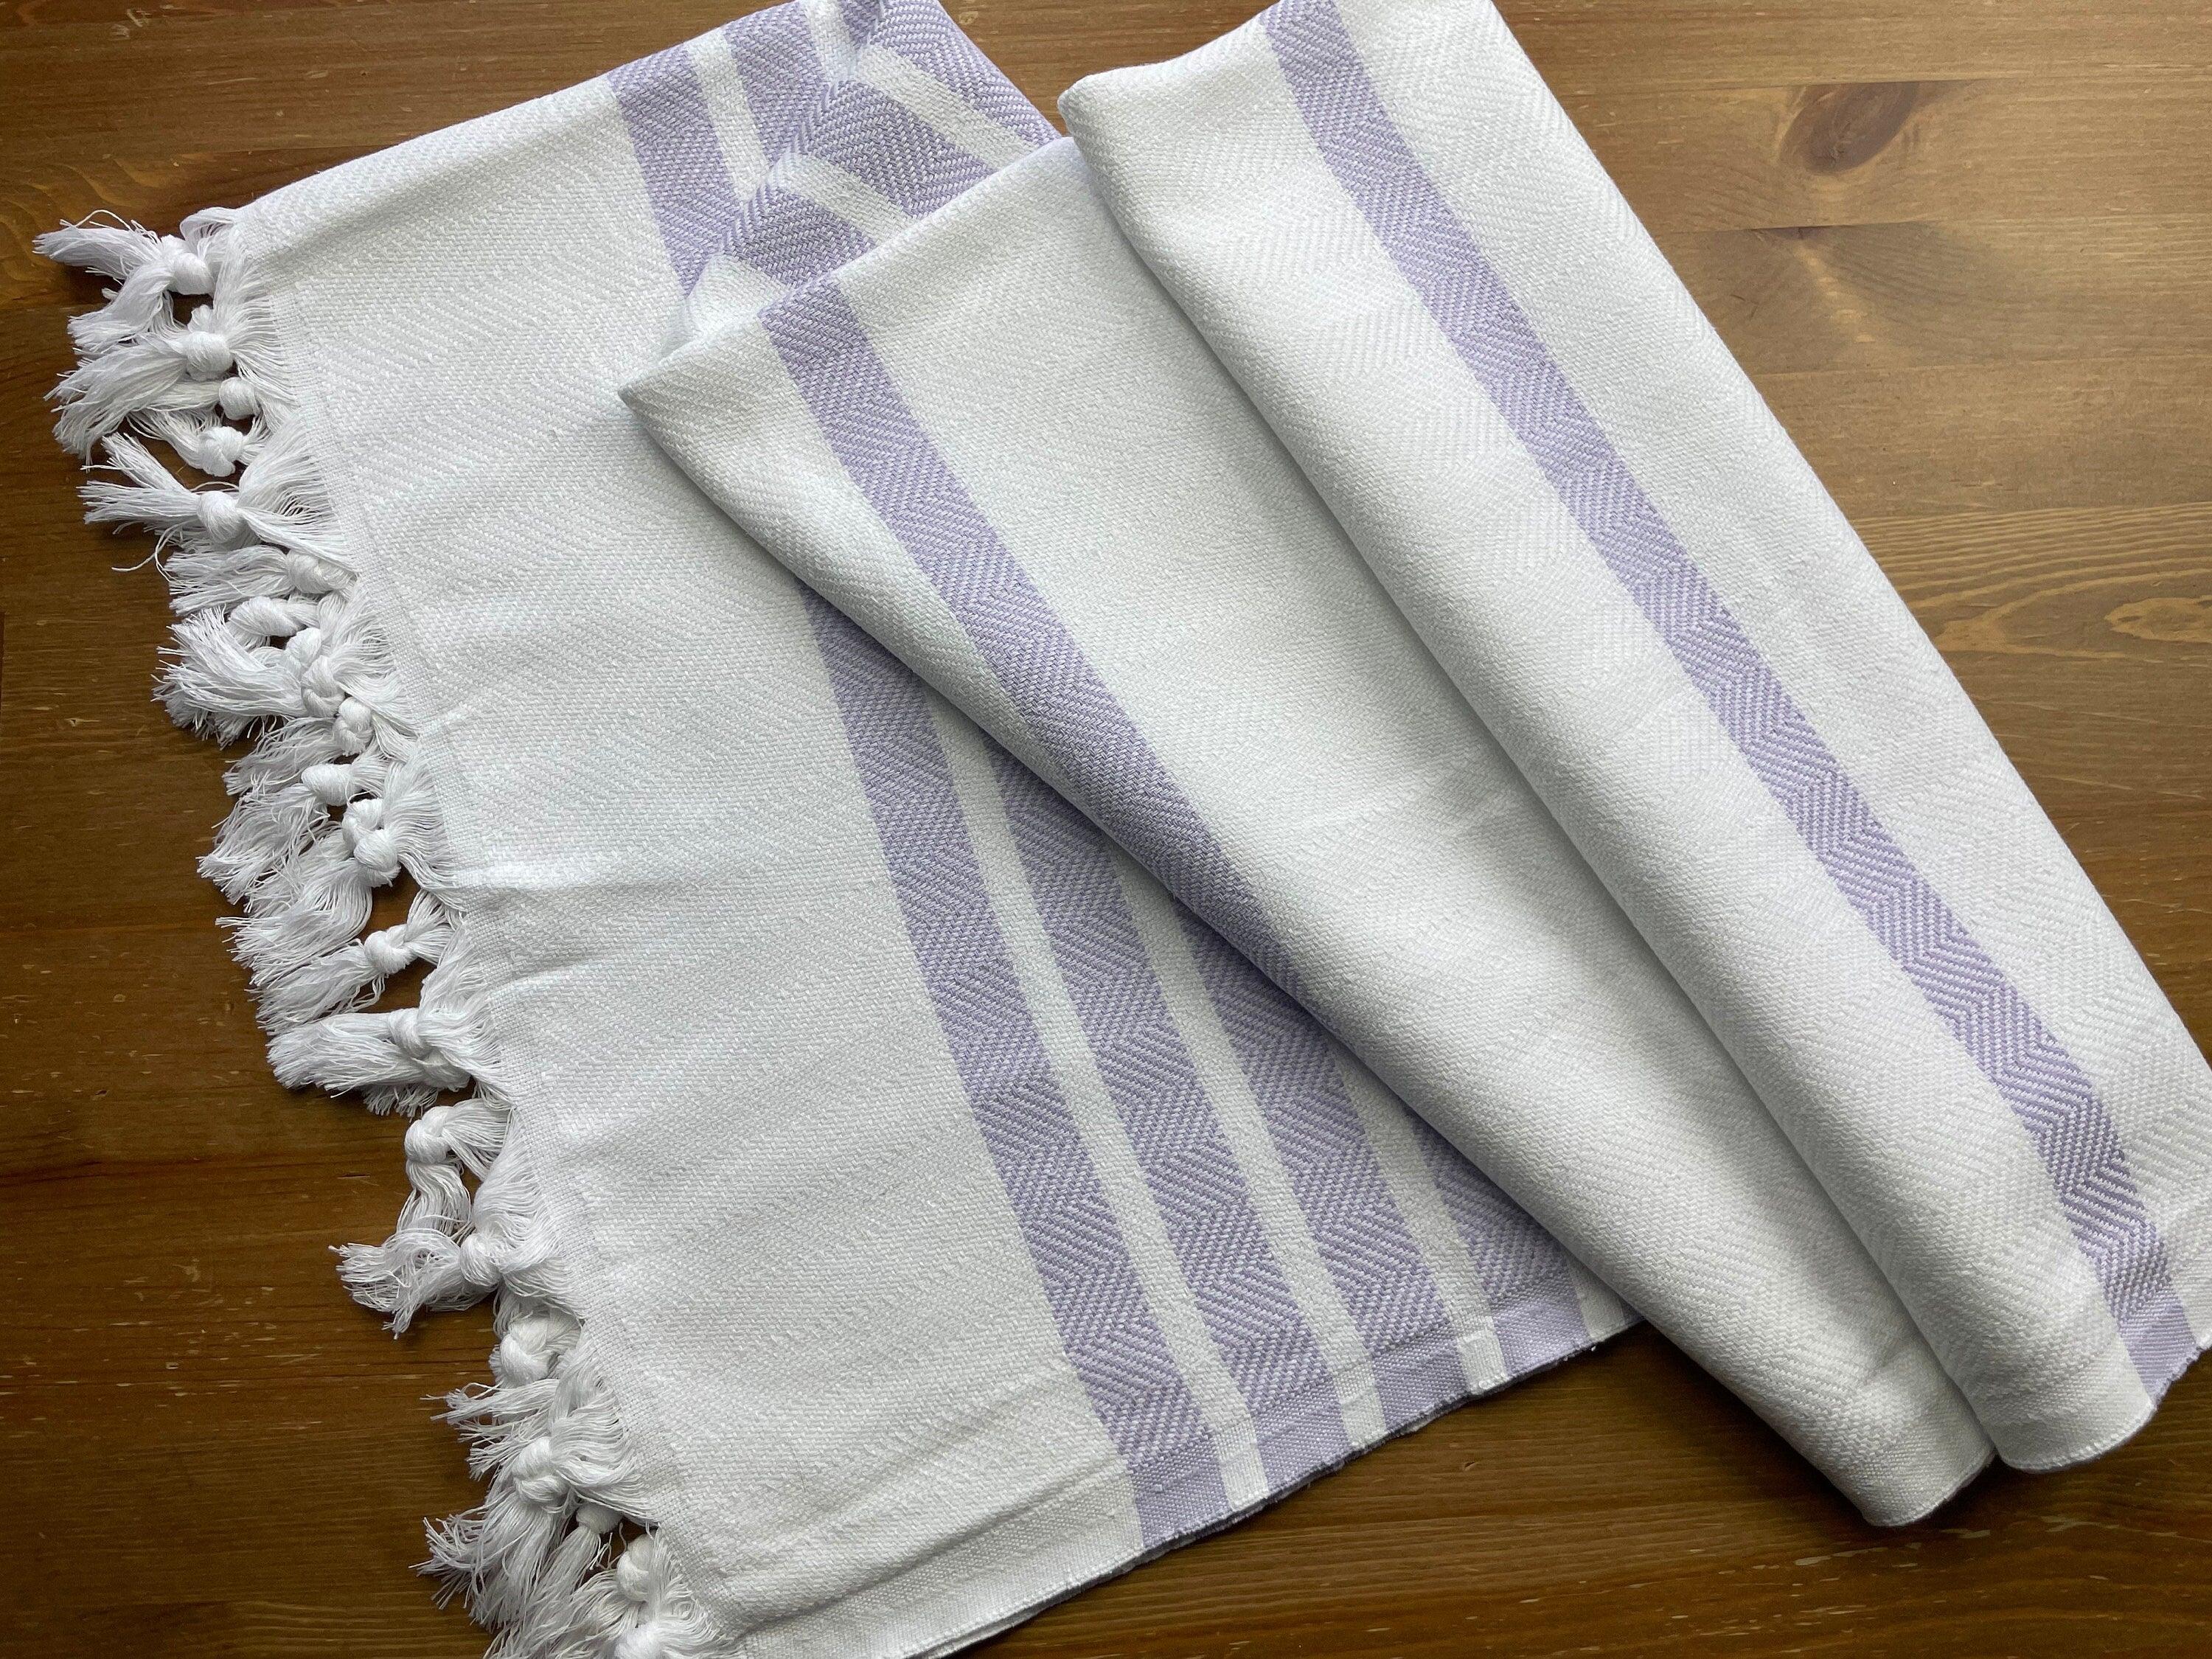 Unique Turkish Peshtemal Towel, Turkish Bath Towel, Cotton Bath Towel, 100% Cotton Towel, Turkish Towel Beach, Striped Peshtemal, Holiday Towels available at Moyoni Design